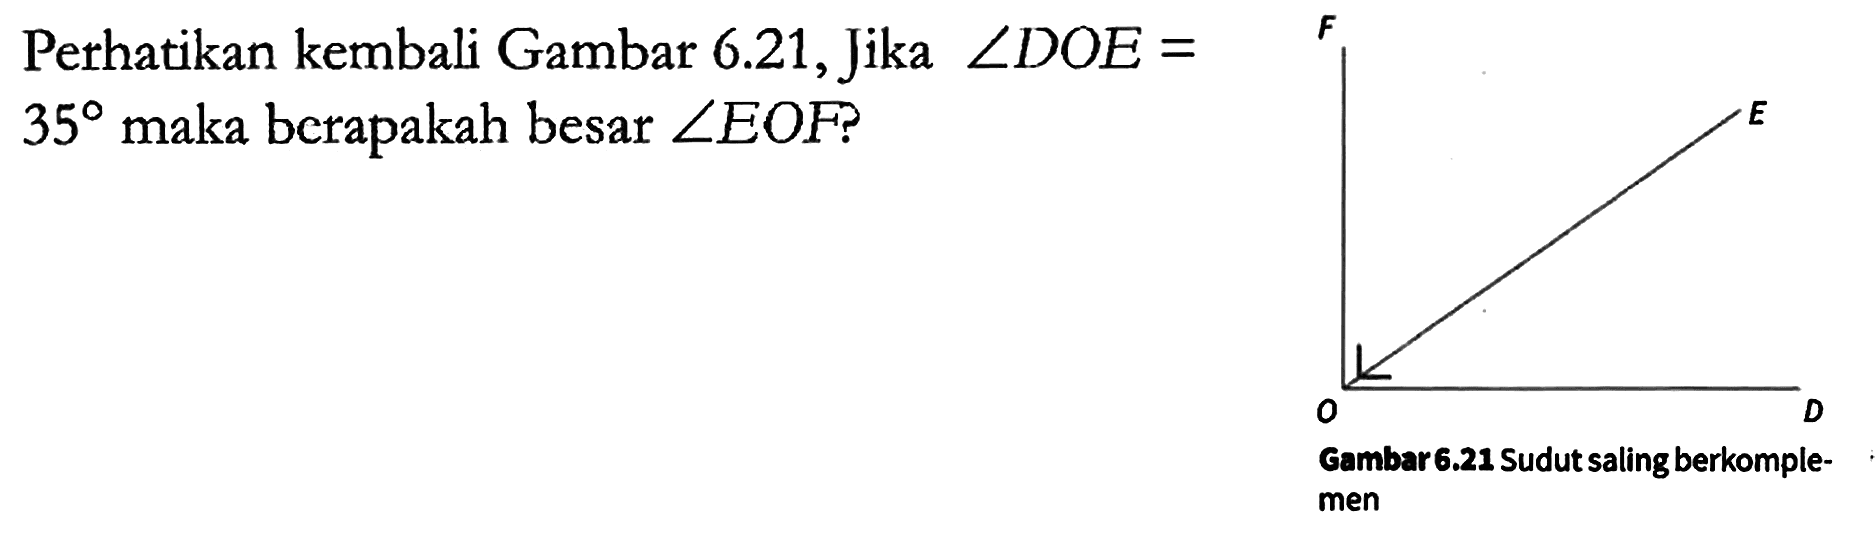 Perhatikan kembali Gambar 6.21, Jika sudut DOE = 35 maka berapakah besar sudut EOF?

F O E D
Gambar 6.21 Sudut saling berkomplemen